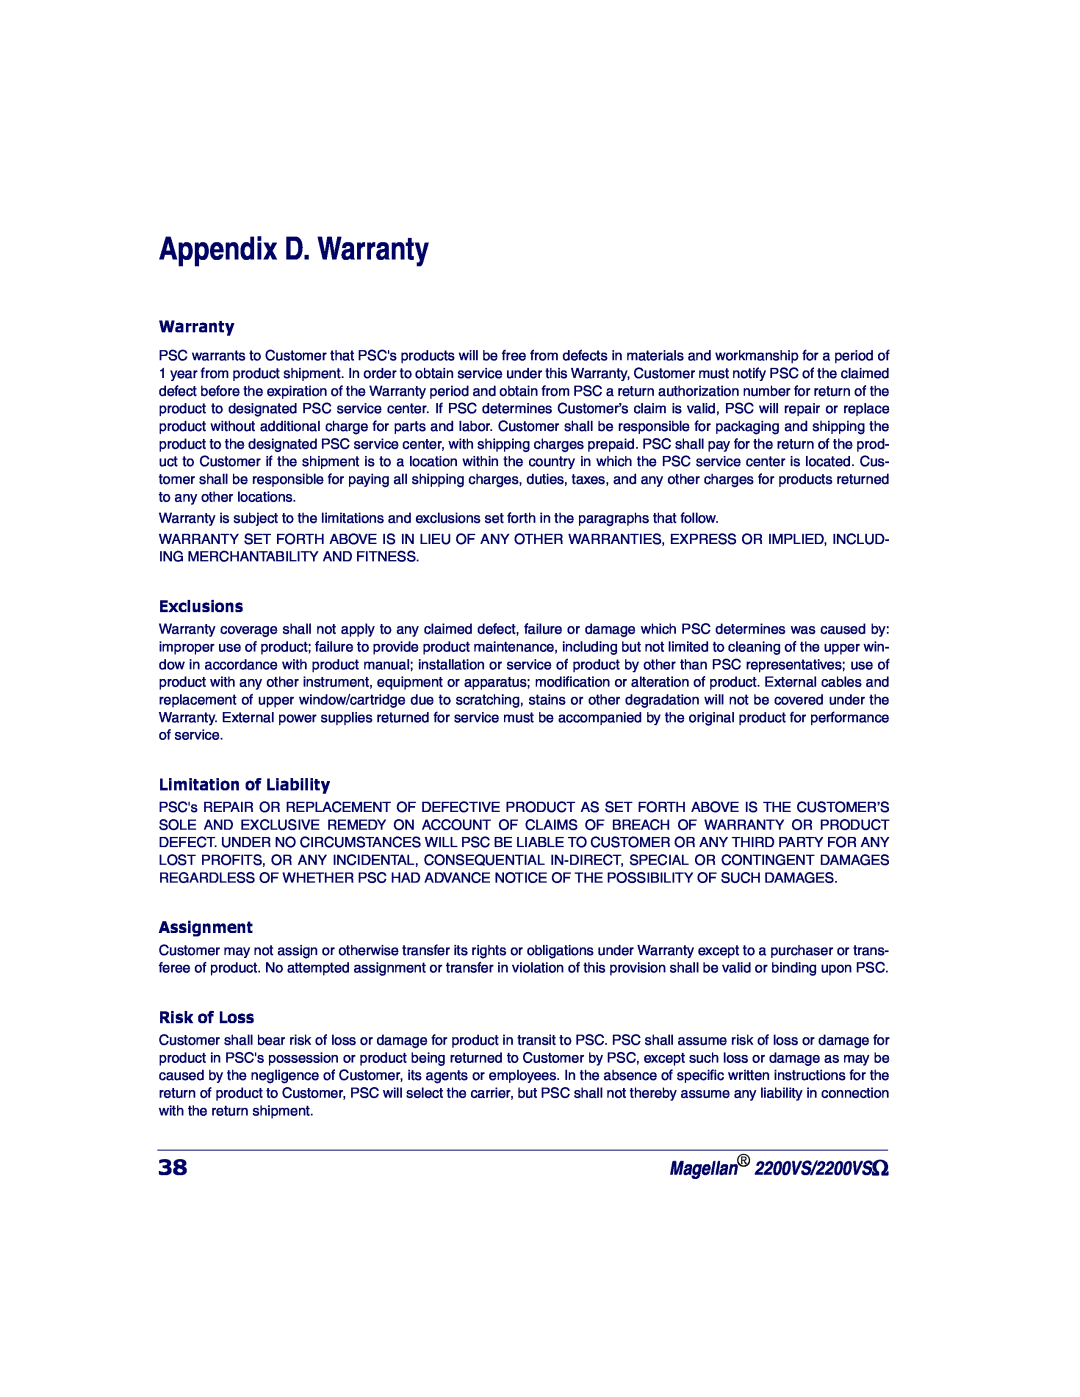 PSC manual Appendix D. Warranty, Exclusions, Limitation of Liability, Assignment, Risk of Loss, Magellan 2200VS/2200VSΩ 